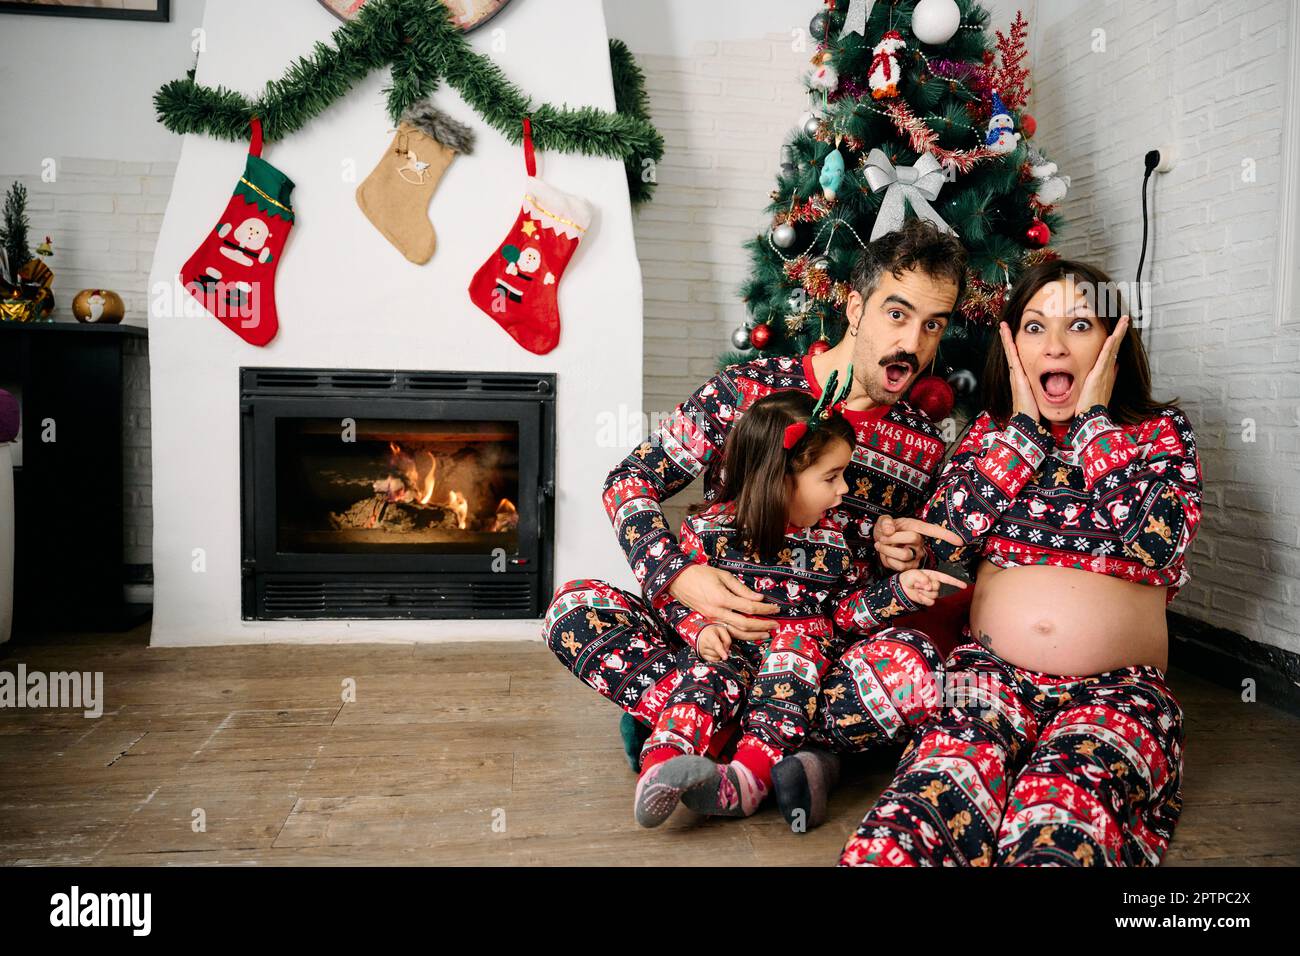 Une famille, avec son père, sa mère et sa fille, portant un pyjama de Noël assorti, prenant des photos de famille devant la cheminée et un tr de Noël Banque D'Images